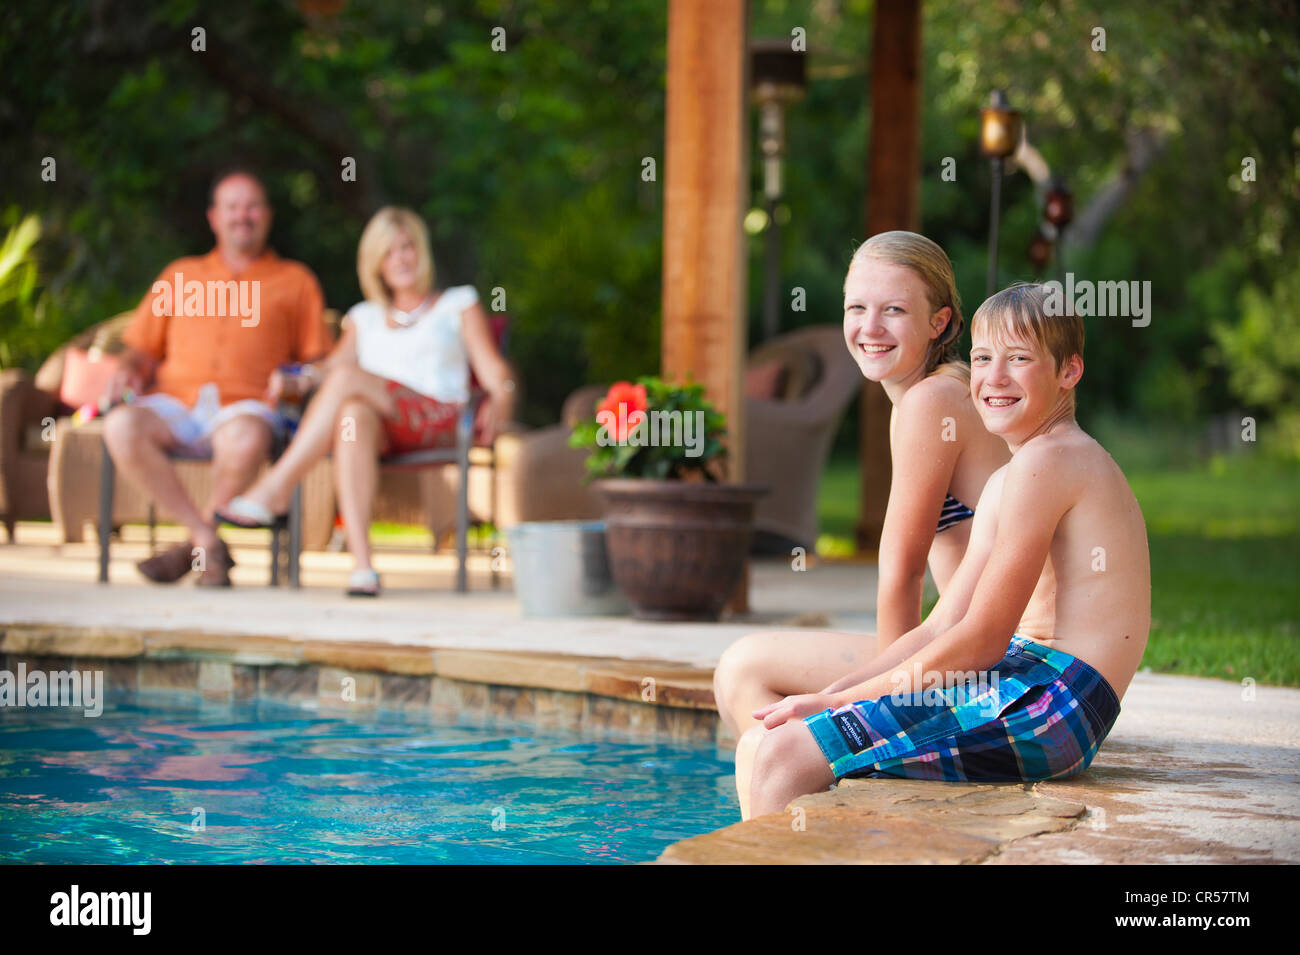 Family Fun At The Backyard Swimming Pool Stock Photo Alamy